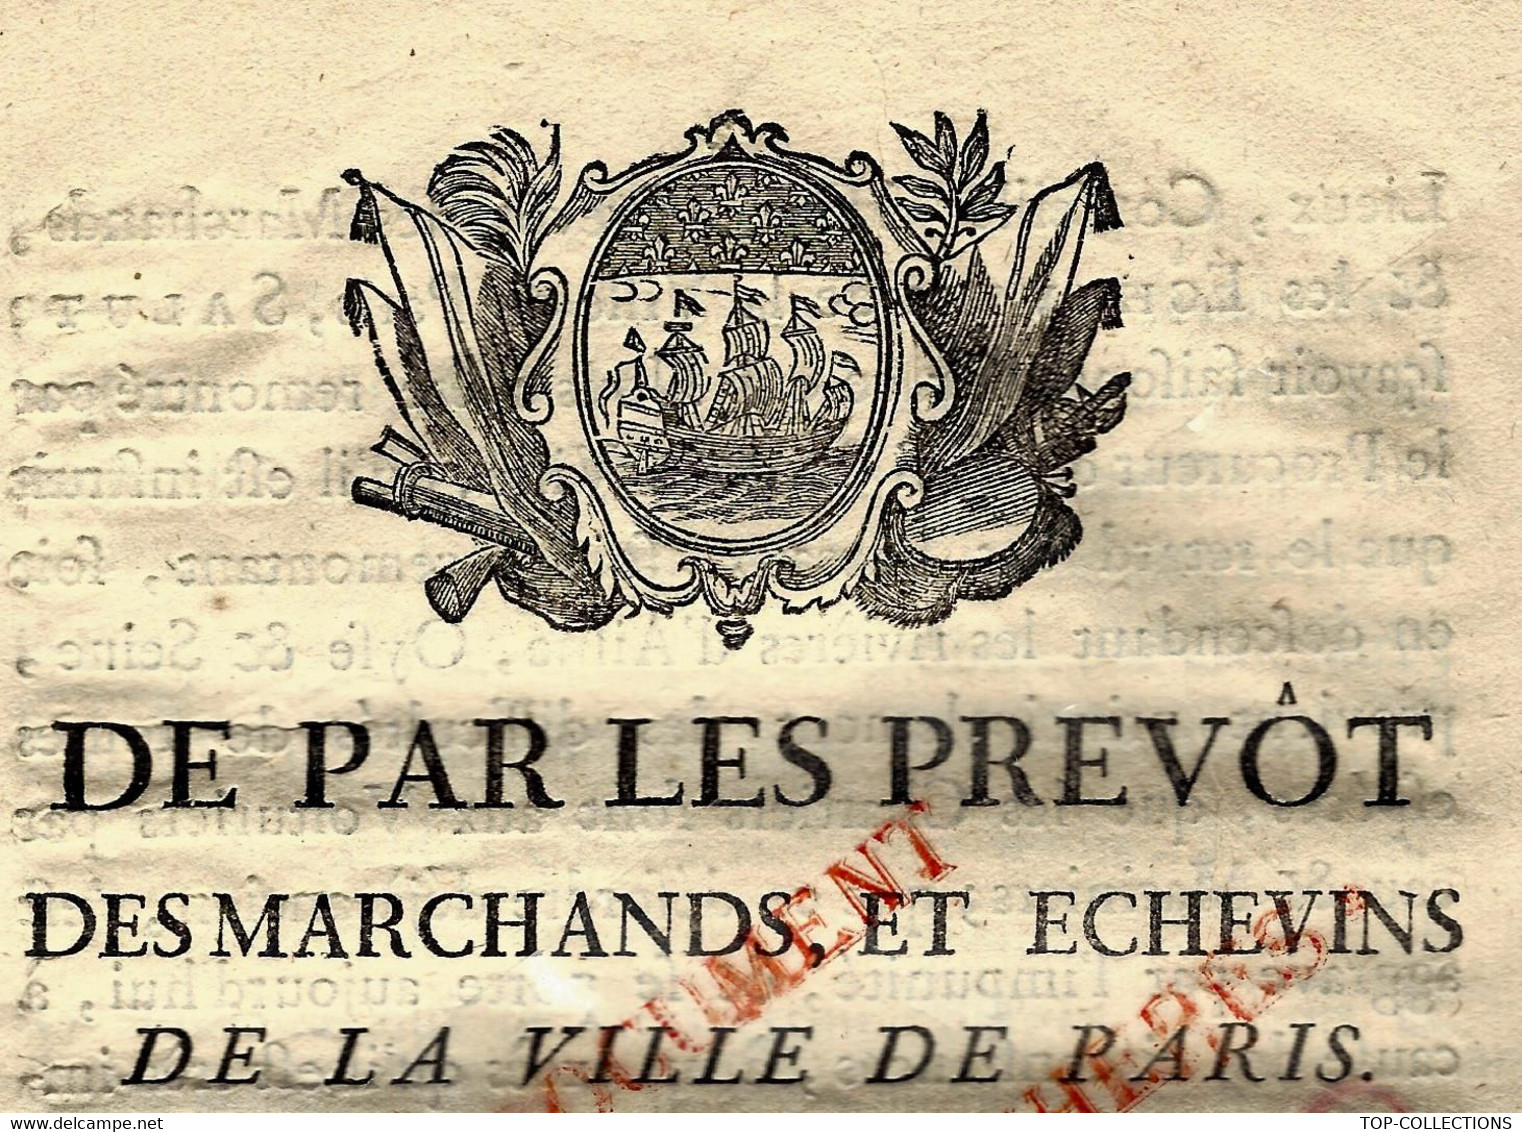 1785 ORDONNANCE REGLEMENTATION CORPORATION VOITURIERS  PAR EAU SEINE OISE ET SEINE PARIS APPROVISIONNEMENT B.E.V.SCANS - Documents Historiques